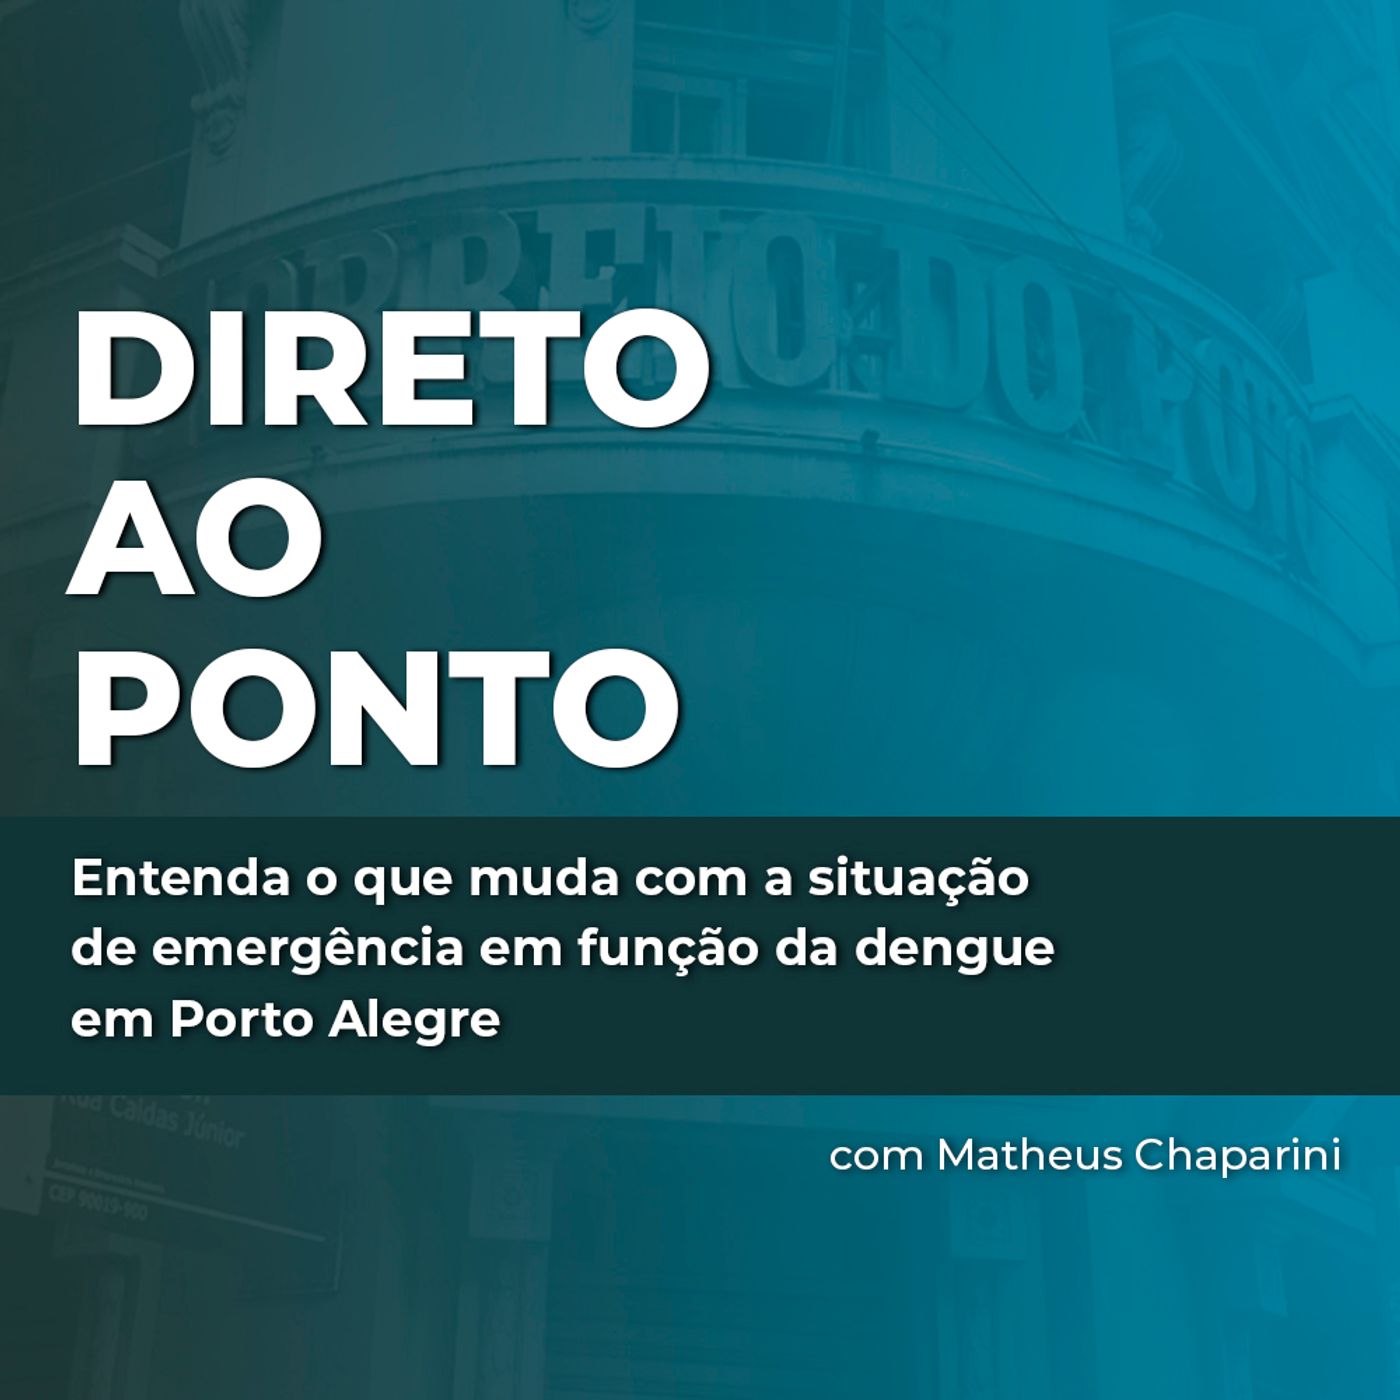 Entenda o que muda com a situação de emergência em função da dengue em Porto Alegre